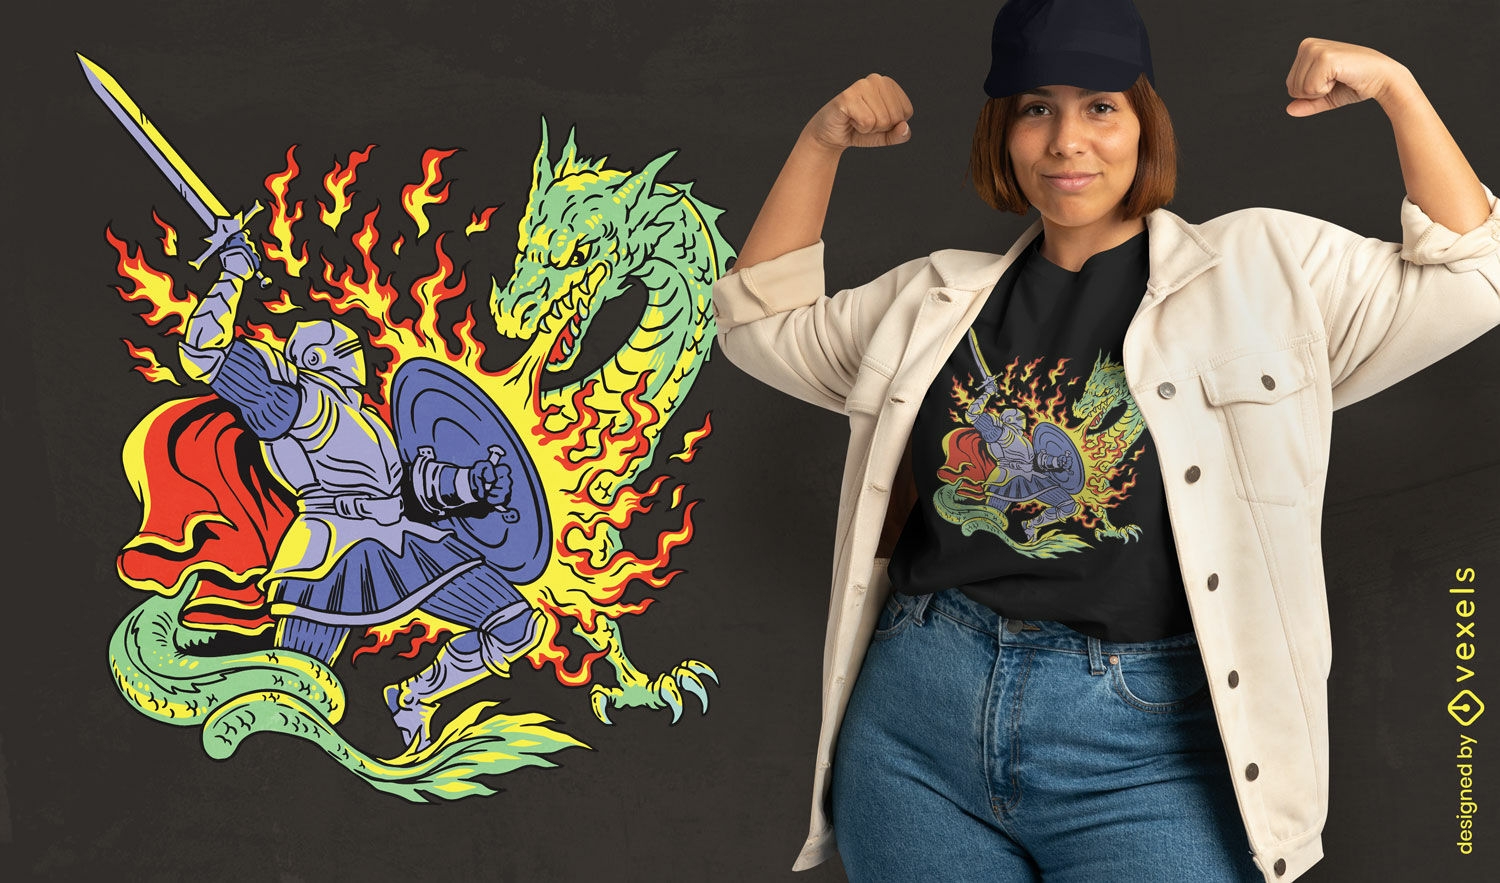 Knight slaying dragon t-shirt design